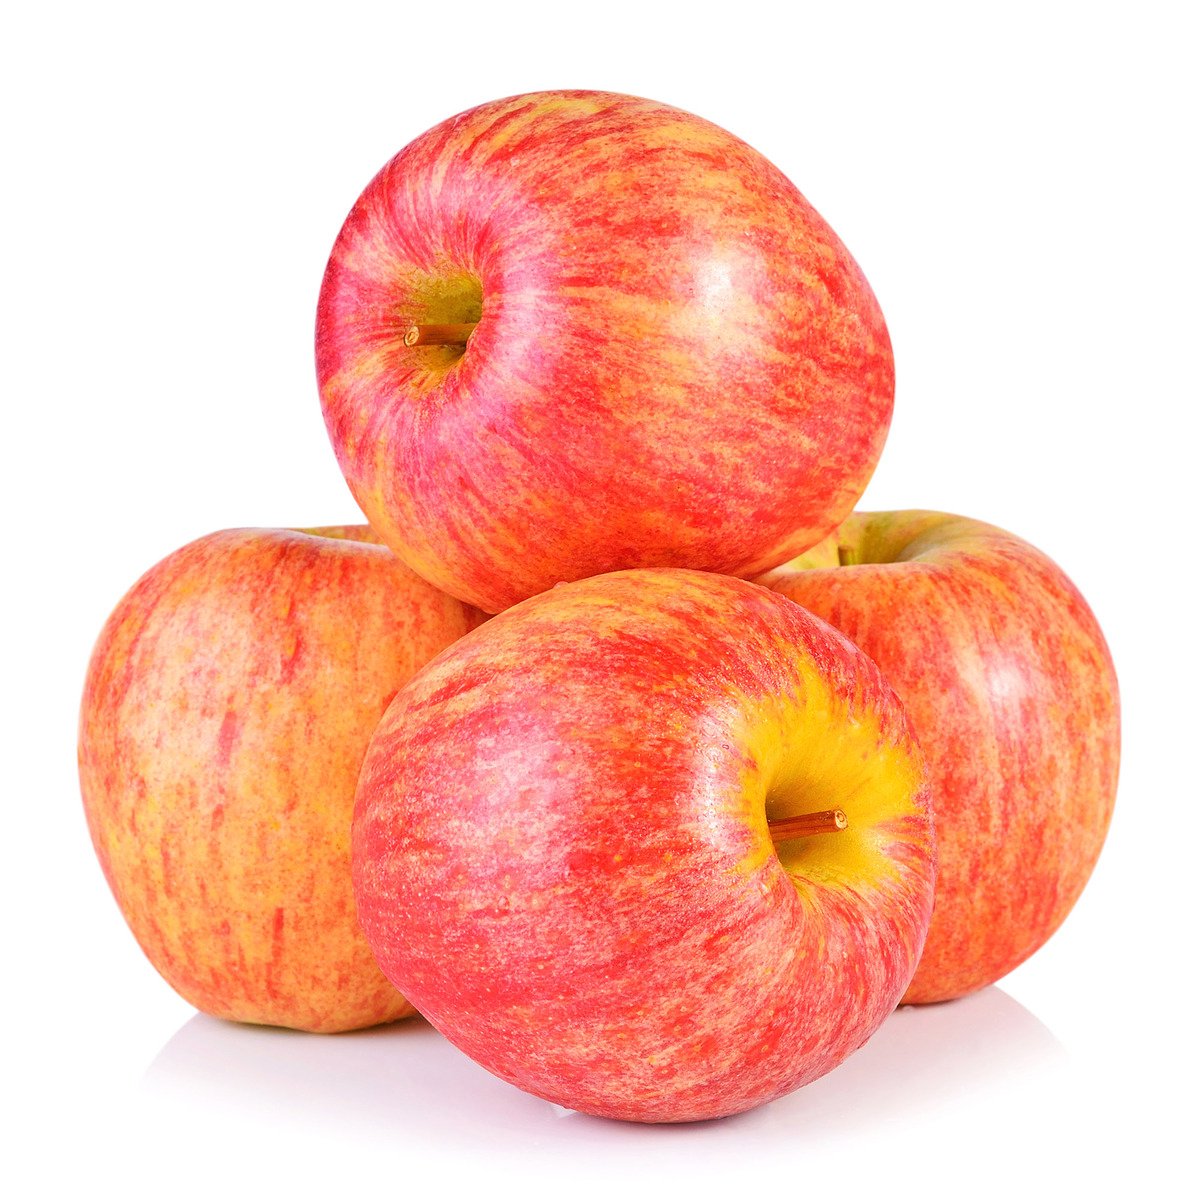 Buy Apple Royal Gala France 1 kg Online at Best Price | Apples | Lulu Kuwait in UAE